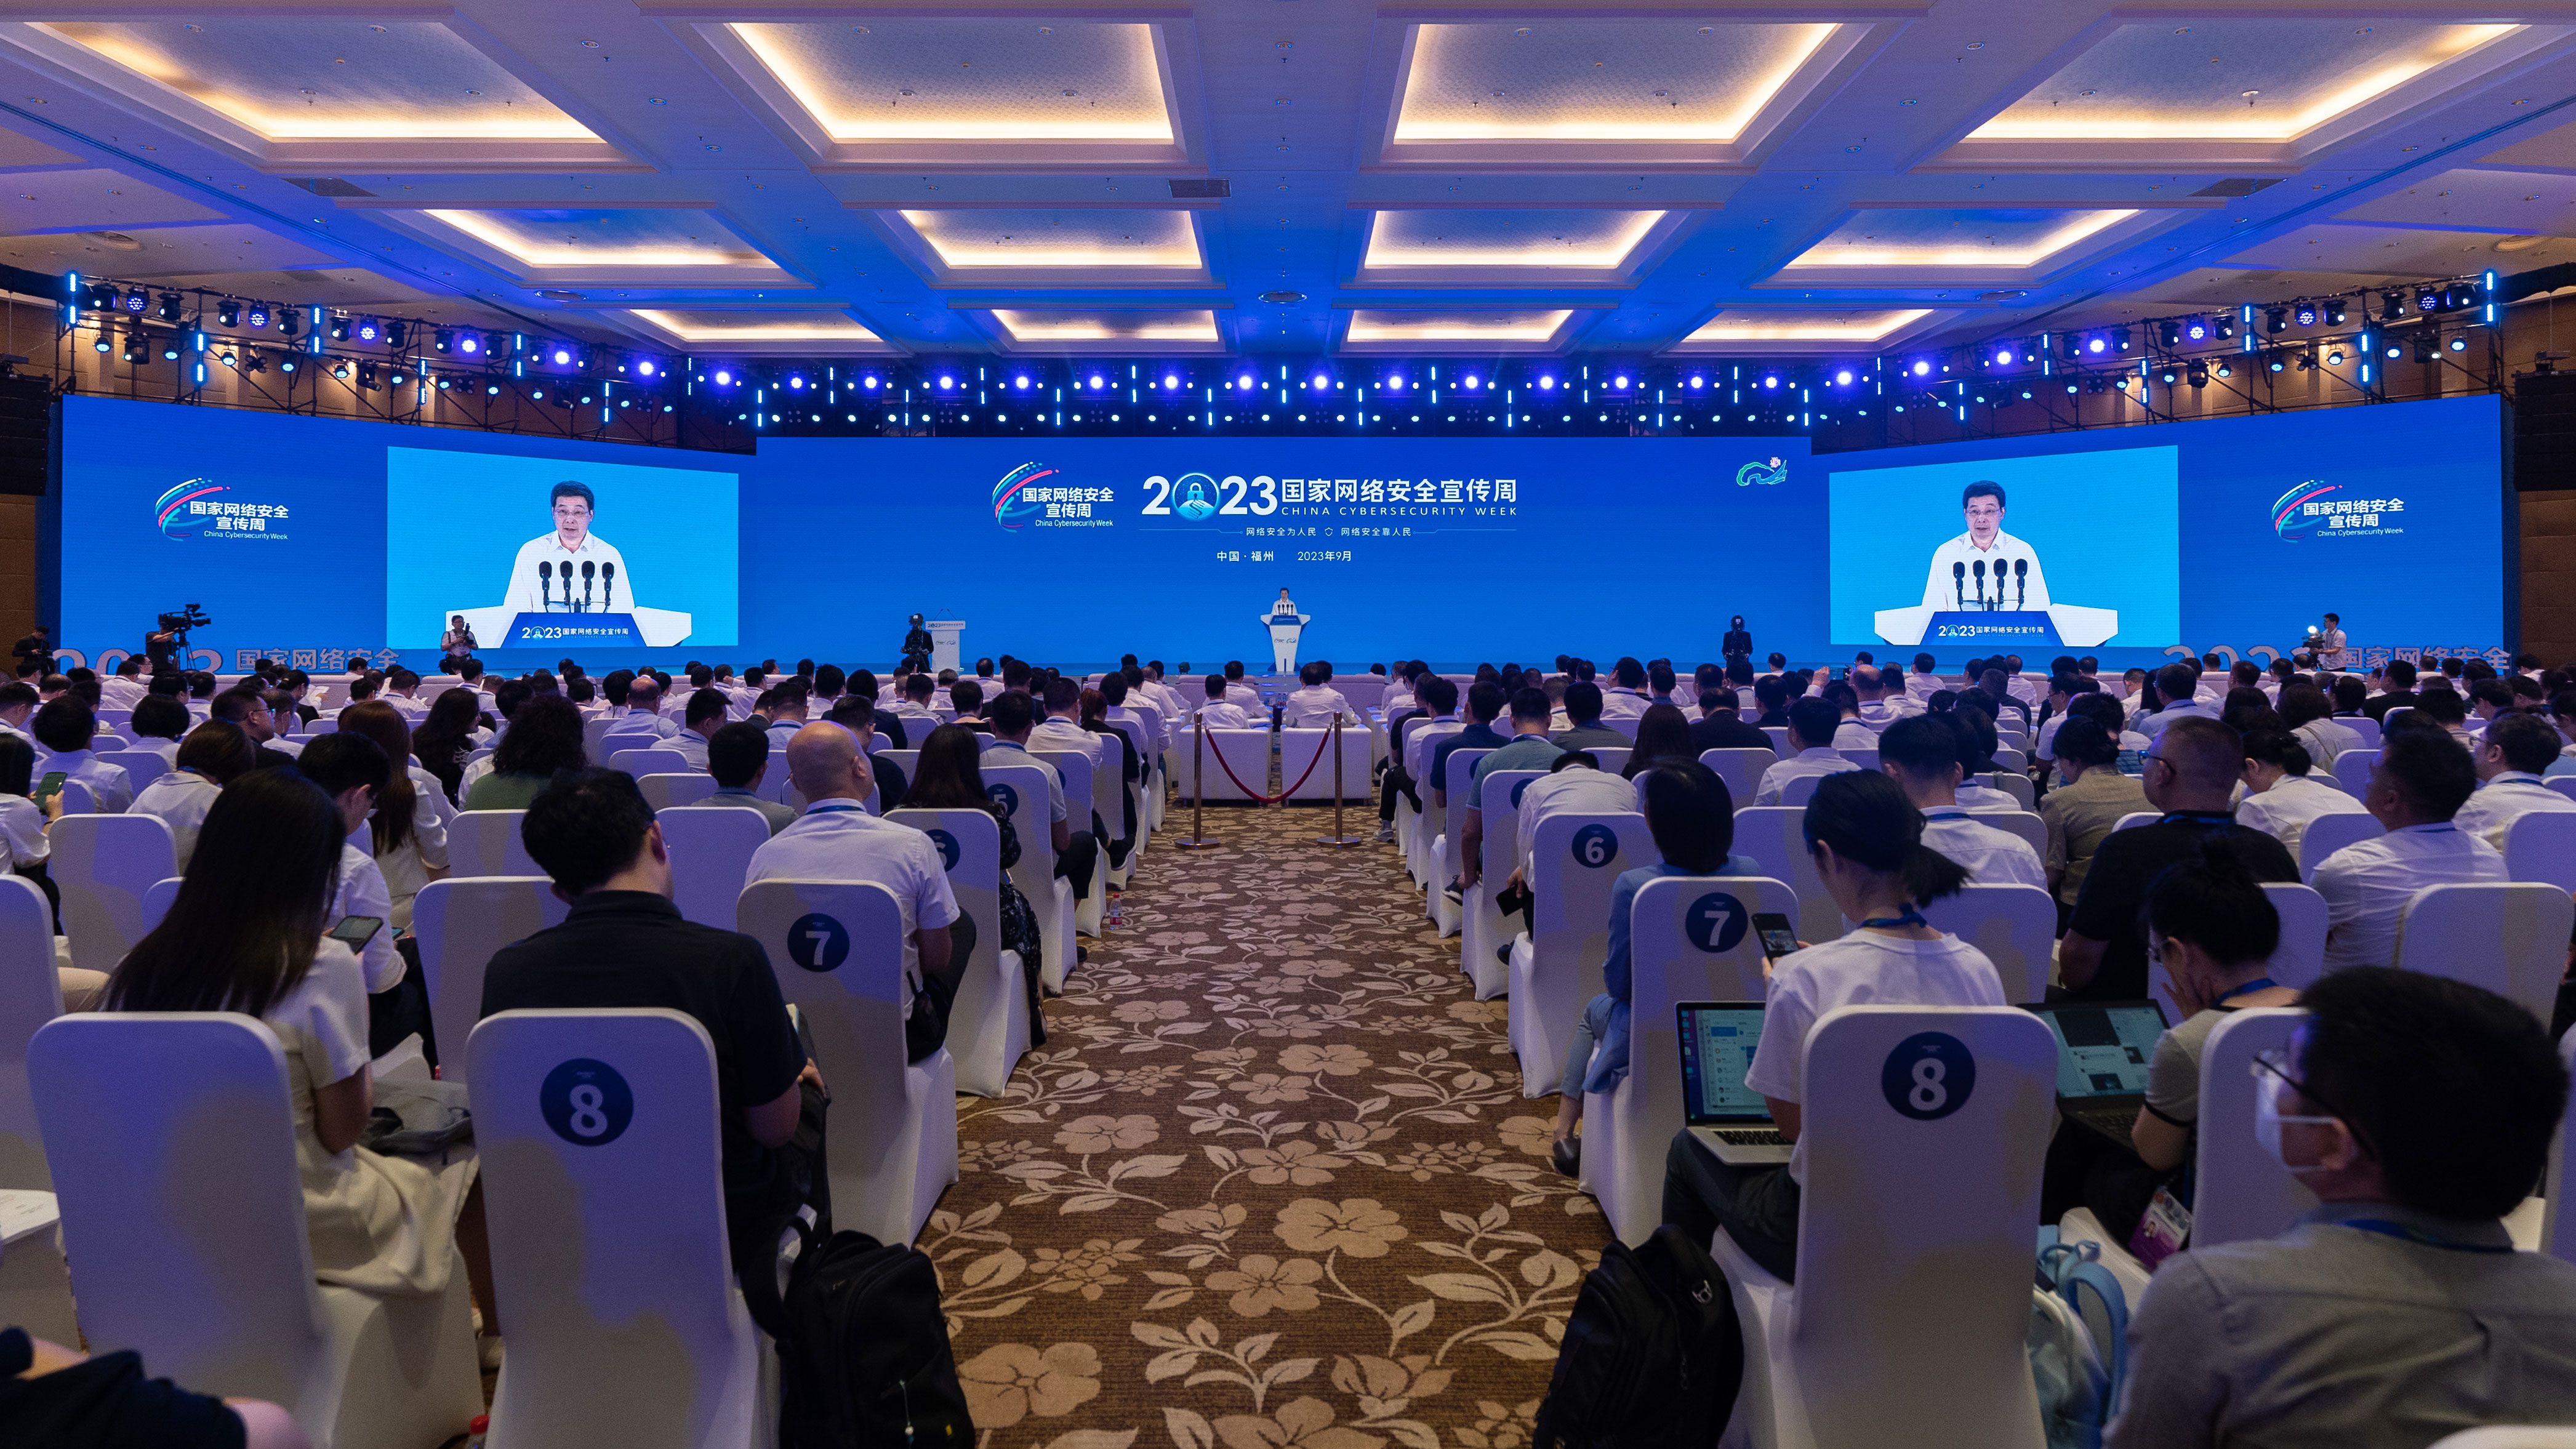 2023年国家网络安全宣传周开幕式在福建福州举行